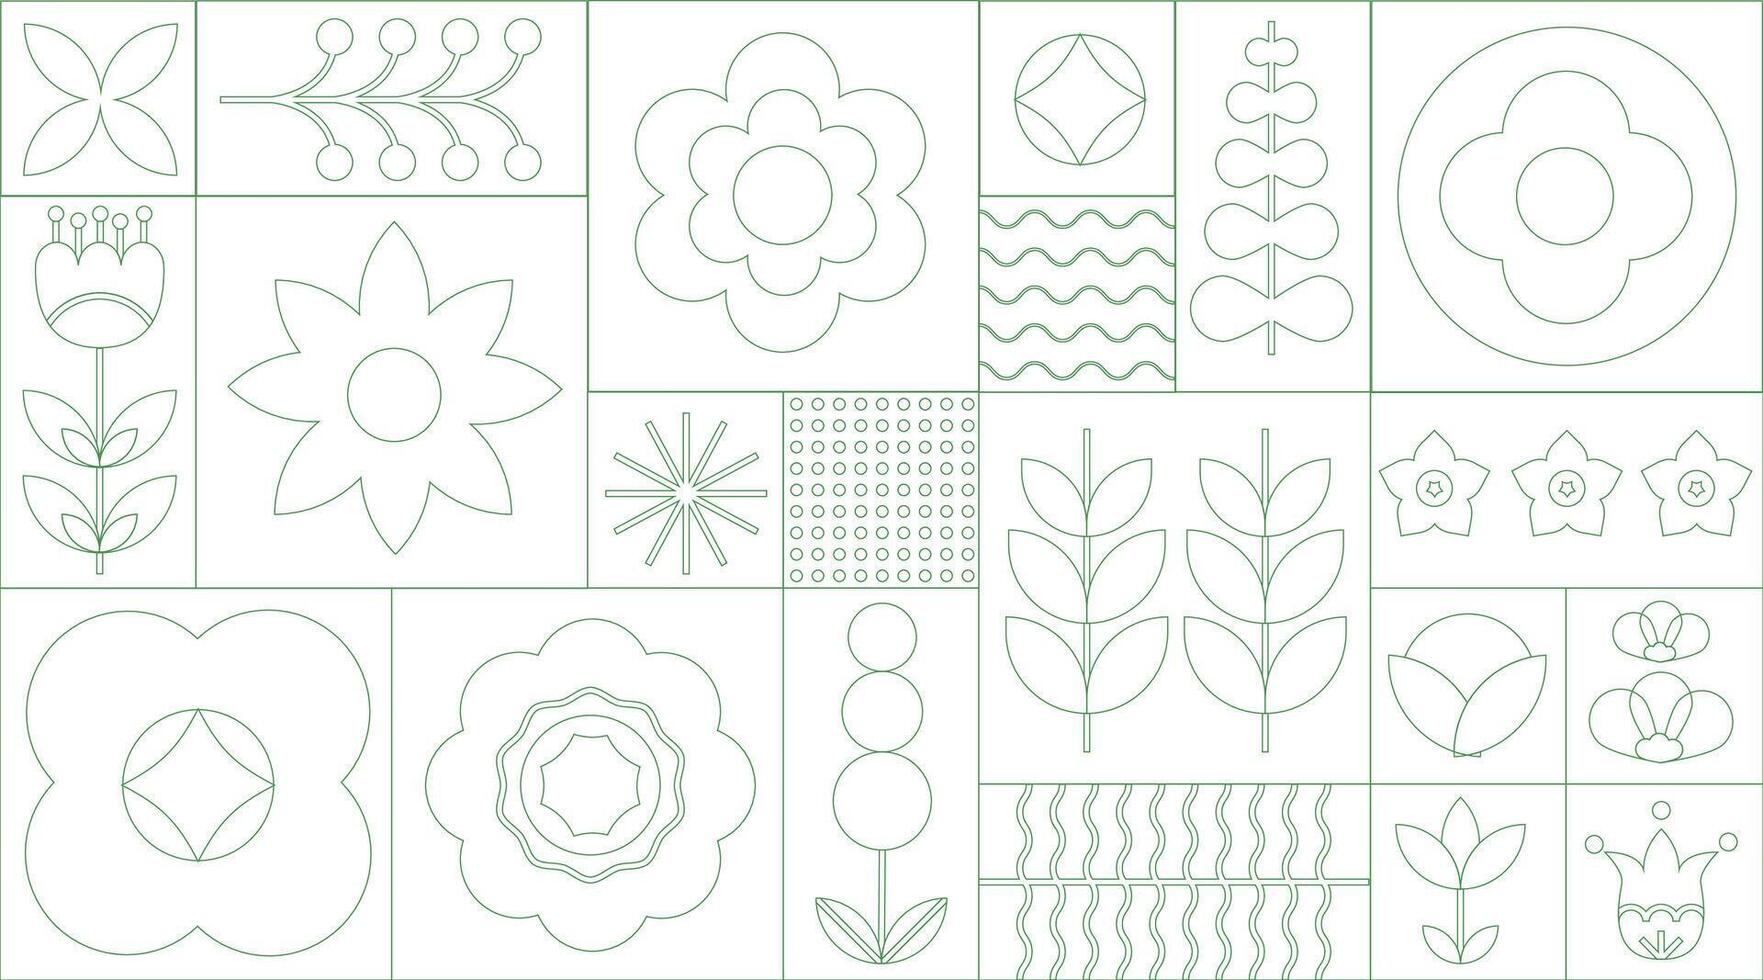 Grün geometrisch nahtlos Linie Blumen- Öko Muster. Mosaik Hintergrund mit Blumen, Pflanzen und einfach Formen im Bauhaus Stil. natürlich Blume Anlage, abstrakt Öko Konzept. Vektor minimal Banner